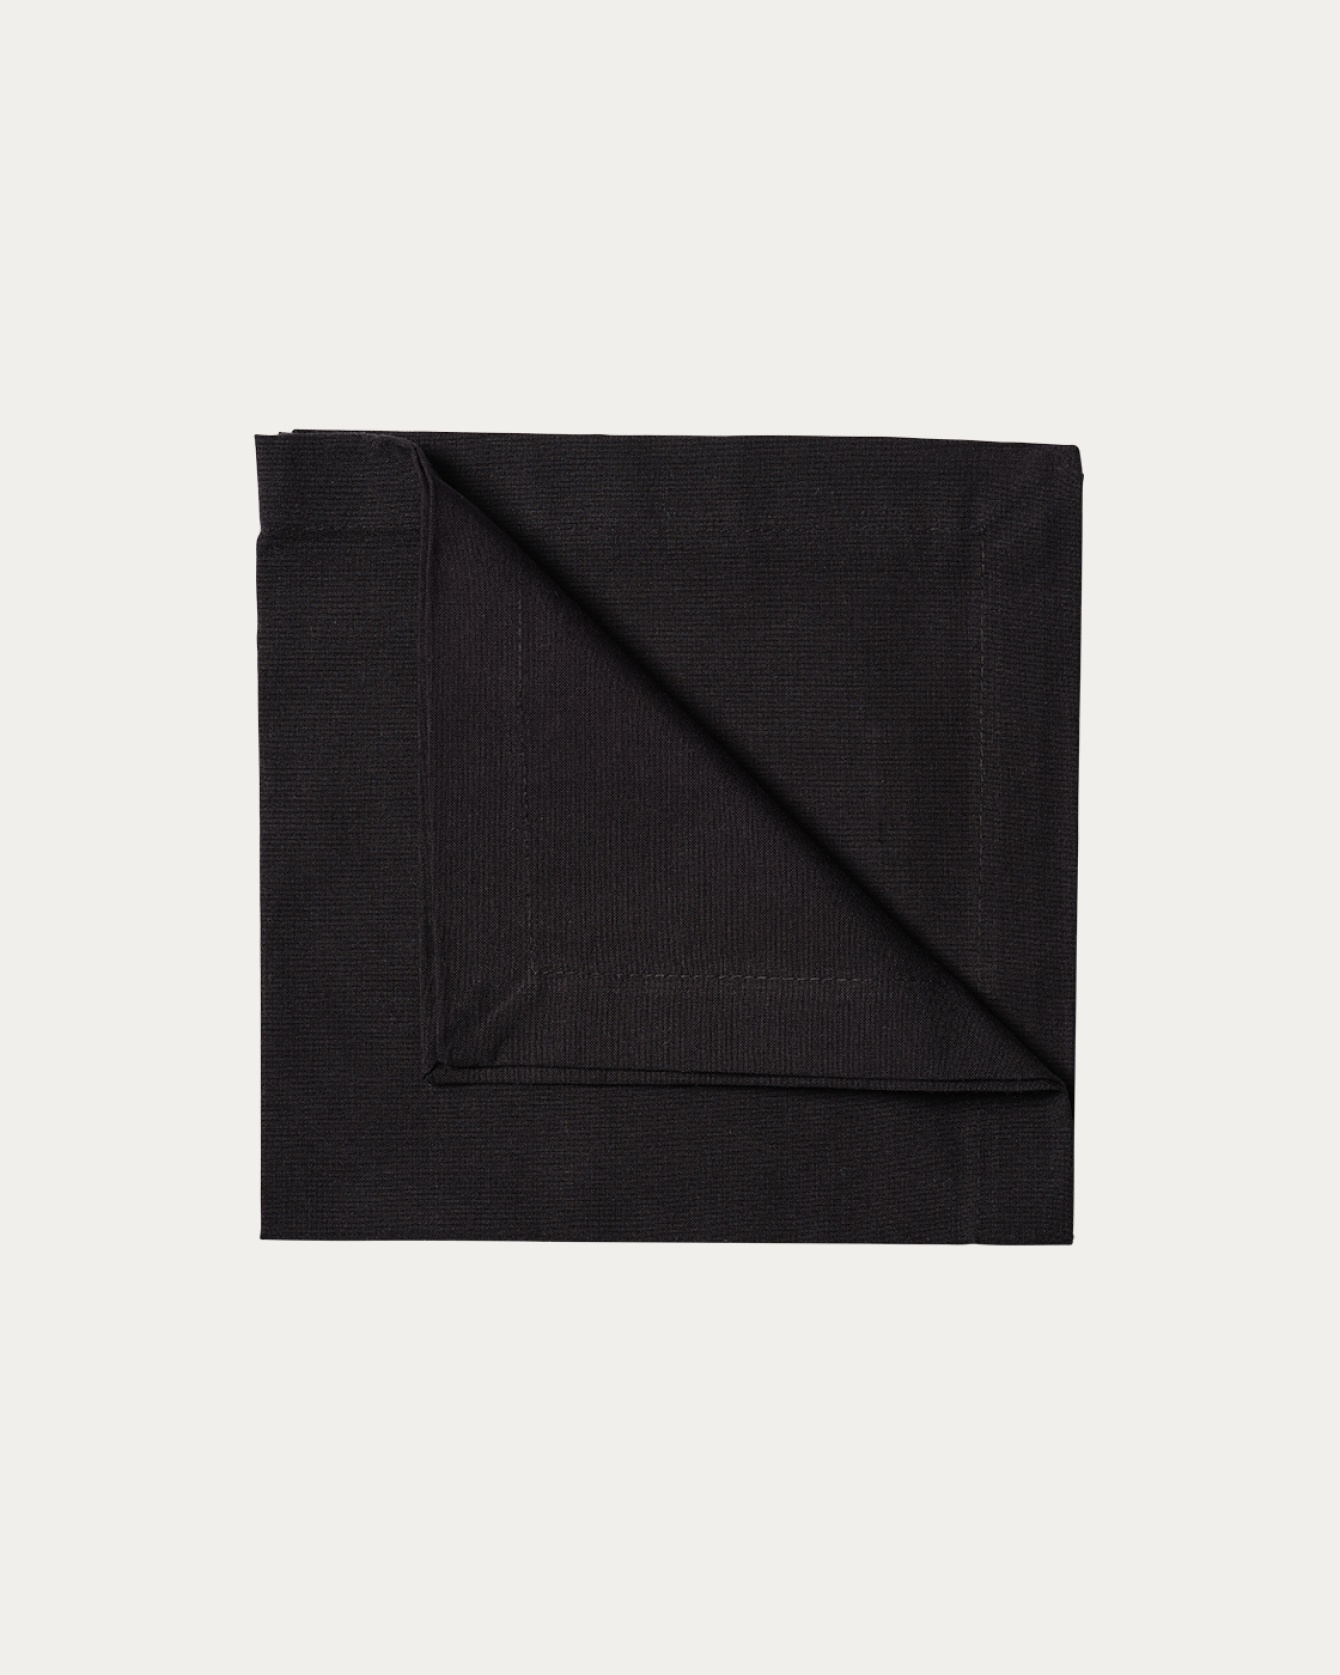 Produktbild svart ROBERT servett av mjuk bomull från LINUM DESIGN. Storlek 45x45 cm och säljs i 4 pack.